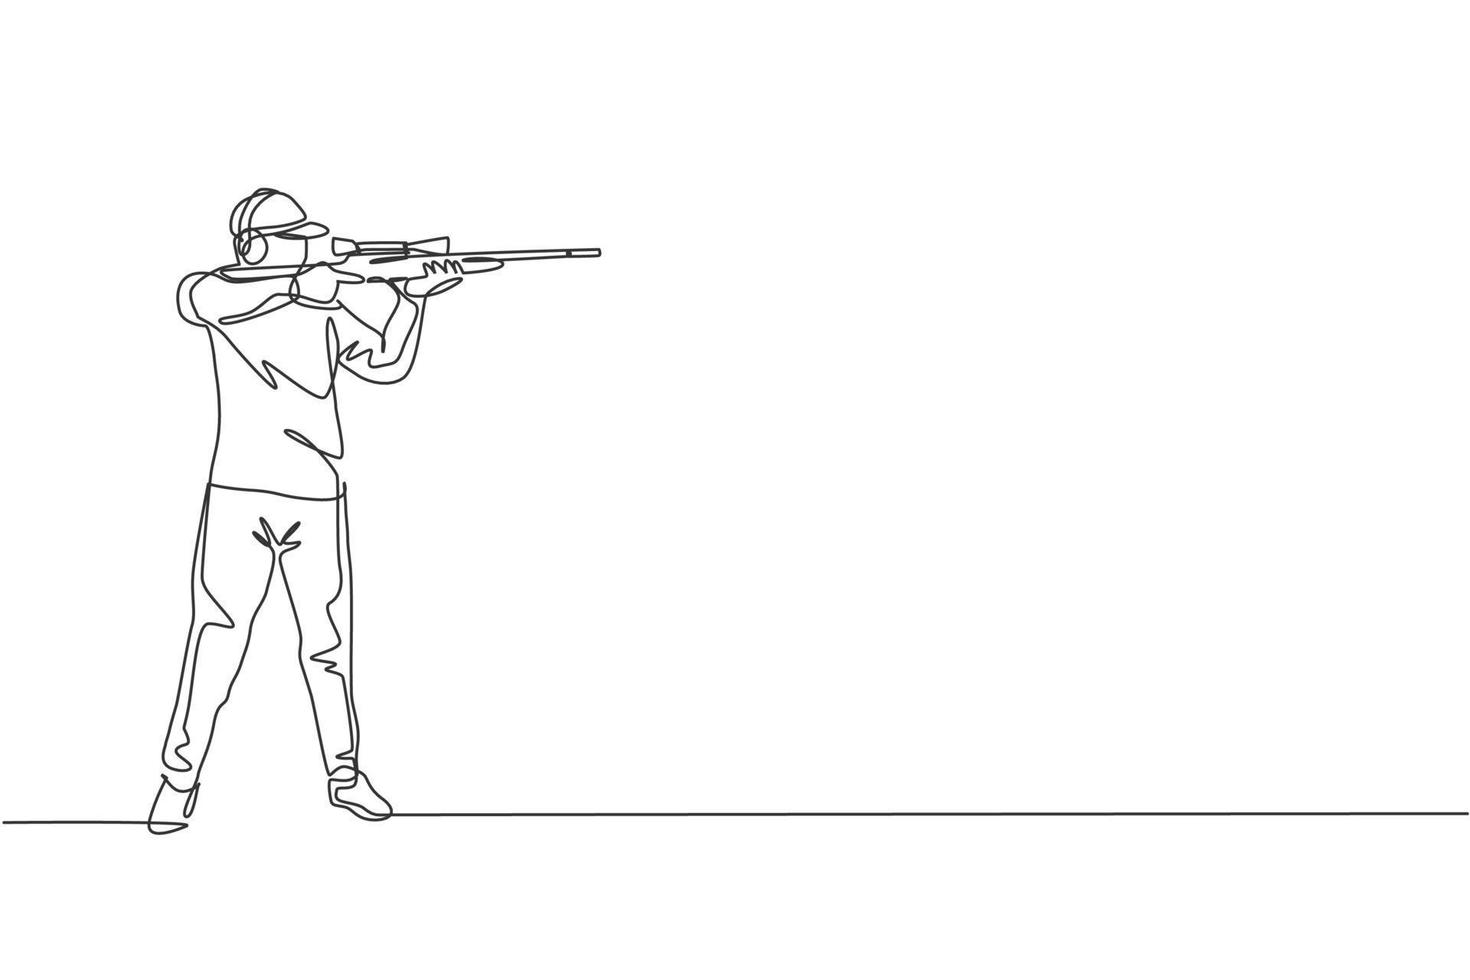 un disegno a linea singola di un giovane che si esercita a sparare al bersaglio nella gamma sul campo di addestramento di tiro illustrazione vettoriale grafica. concetto di sport di tiro al piattello. moderno disegno a linea continua